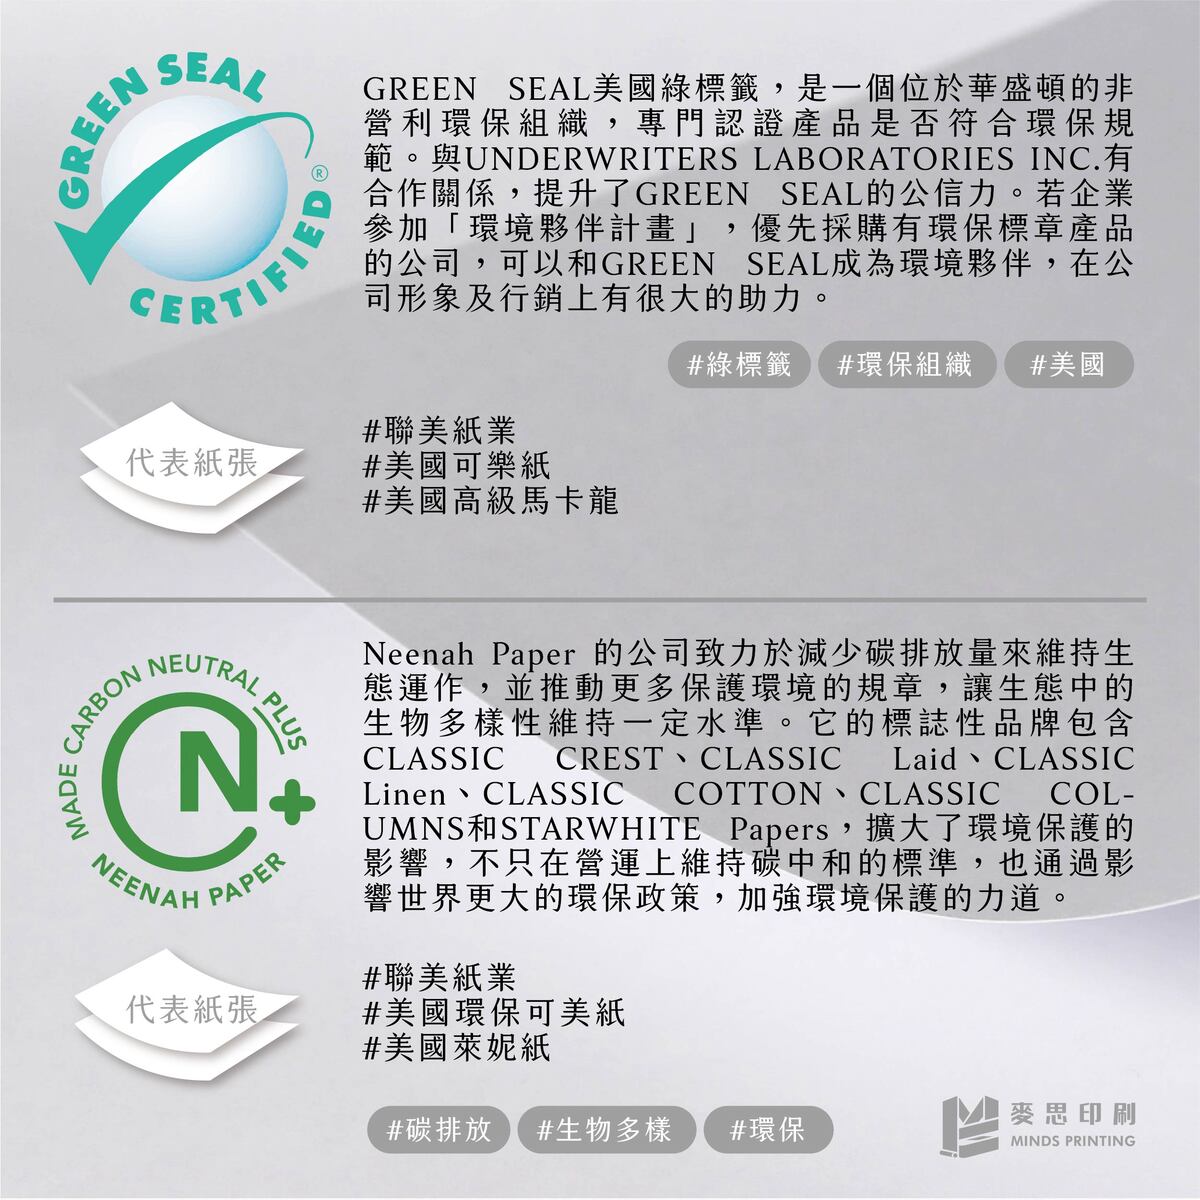 紙張最常見環保認證標章是什麼？－GREEN SEAL&Neenah Paper